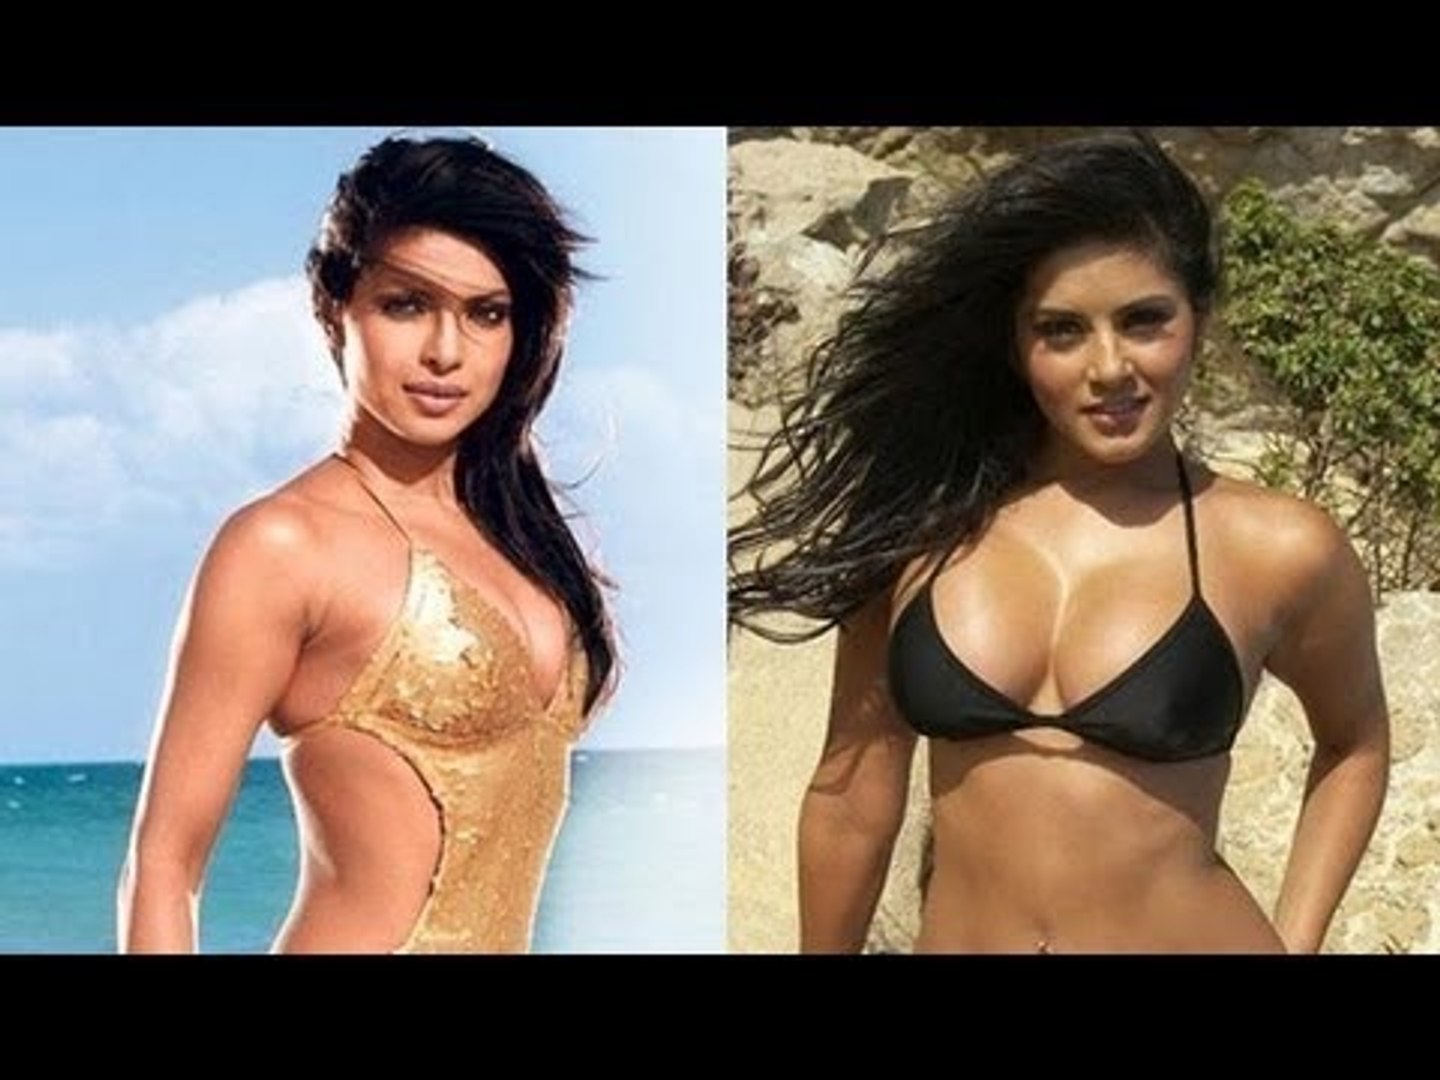 1440px x 1080px - Sunny Leone Says Priyanka Chopra is My ROLE MODEL - video Dailymotion